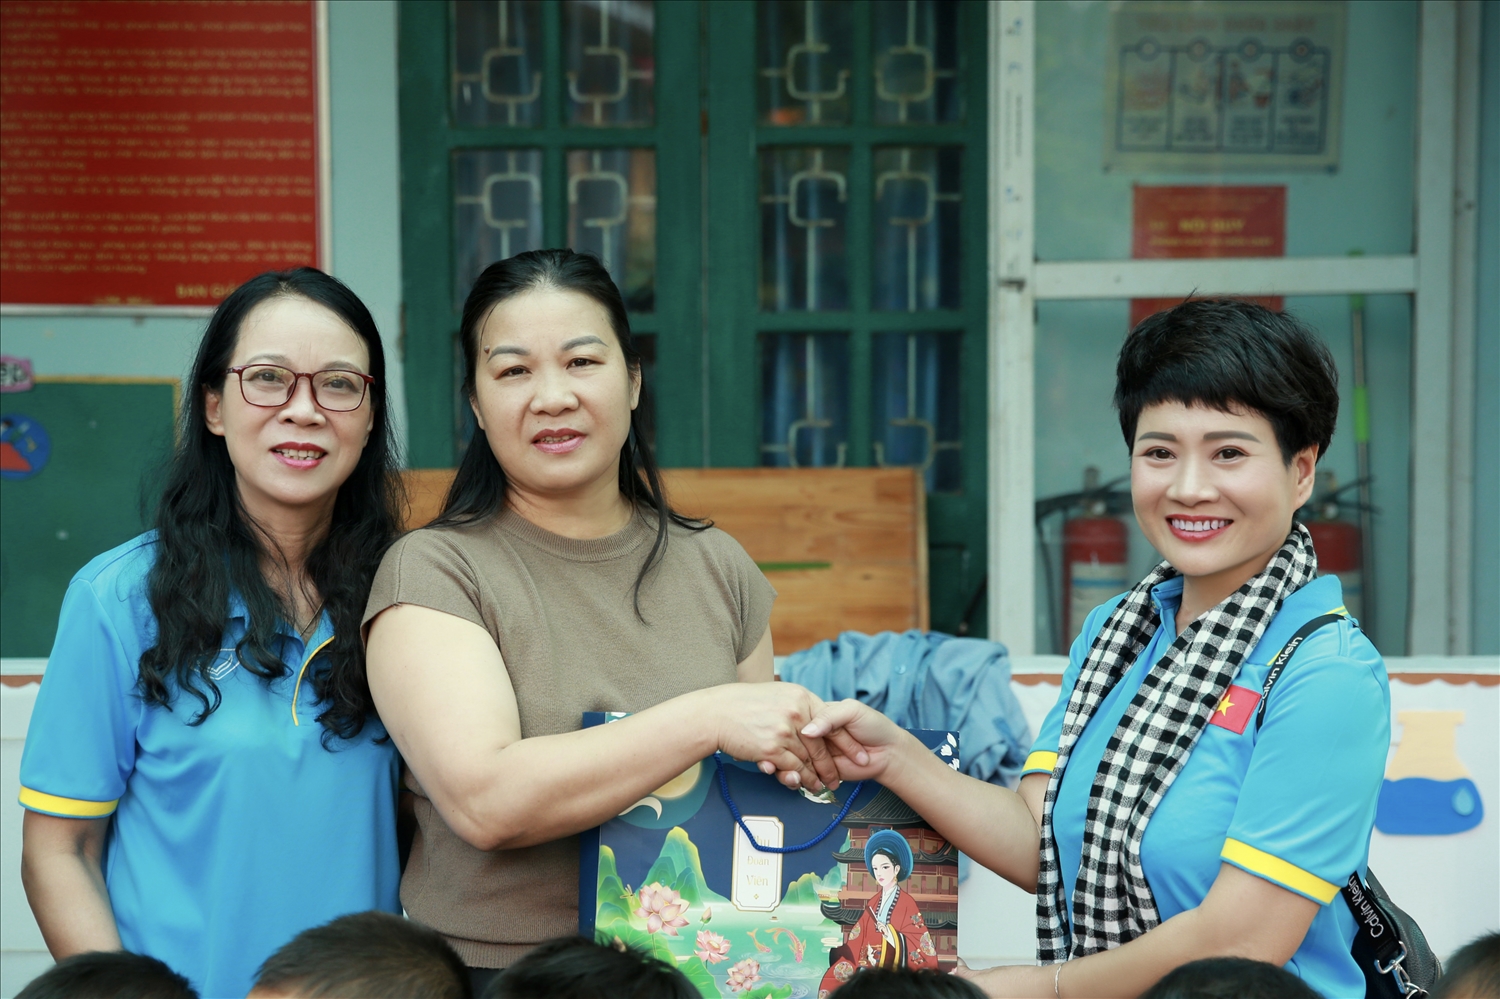 Thay mặt đoàn thiện nguyện, Bà Nguyễn Hồng Vân, Giám đốc công ty TNHH Tổng hợp Nguyên Khôi đã trao số tiền 10.000.000 đồng cho trường mầm non xã Mồ Dề nhân dịp năm học mới góp phần nâng cao đời sống và cơ sở vật chất cho nhà trường.